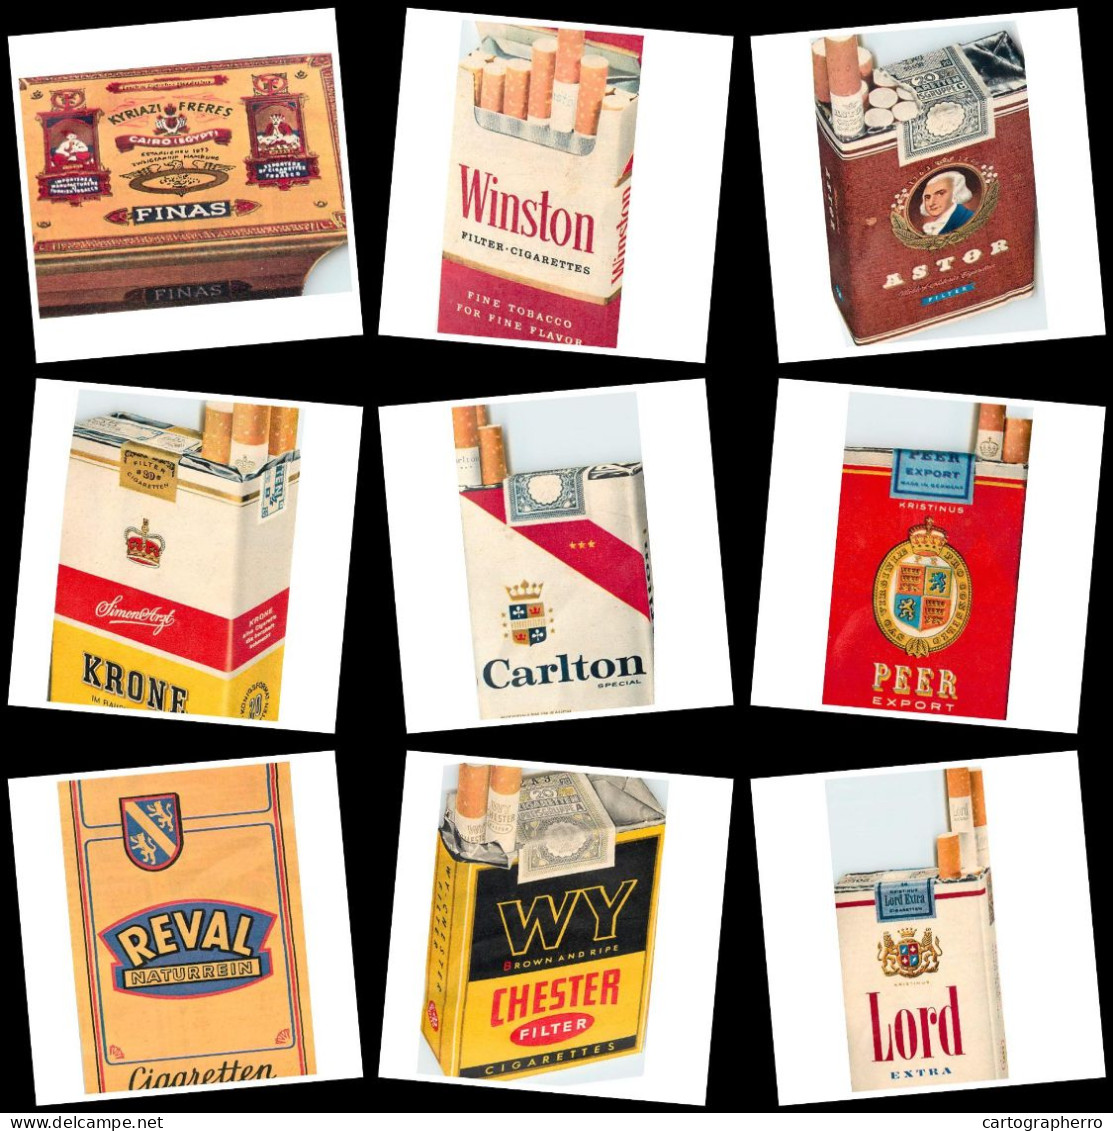 Lot Of 9 Paper Magasine Scraps All Cigarette Related Topic Winston Astor Chester Reval Carlton Krone Lord Peer Tobacco - Articoli Pubblicitari